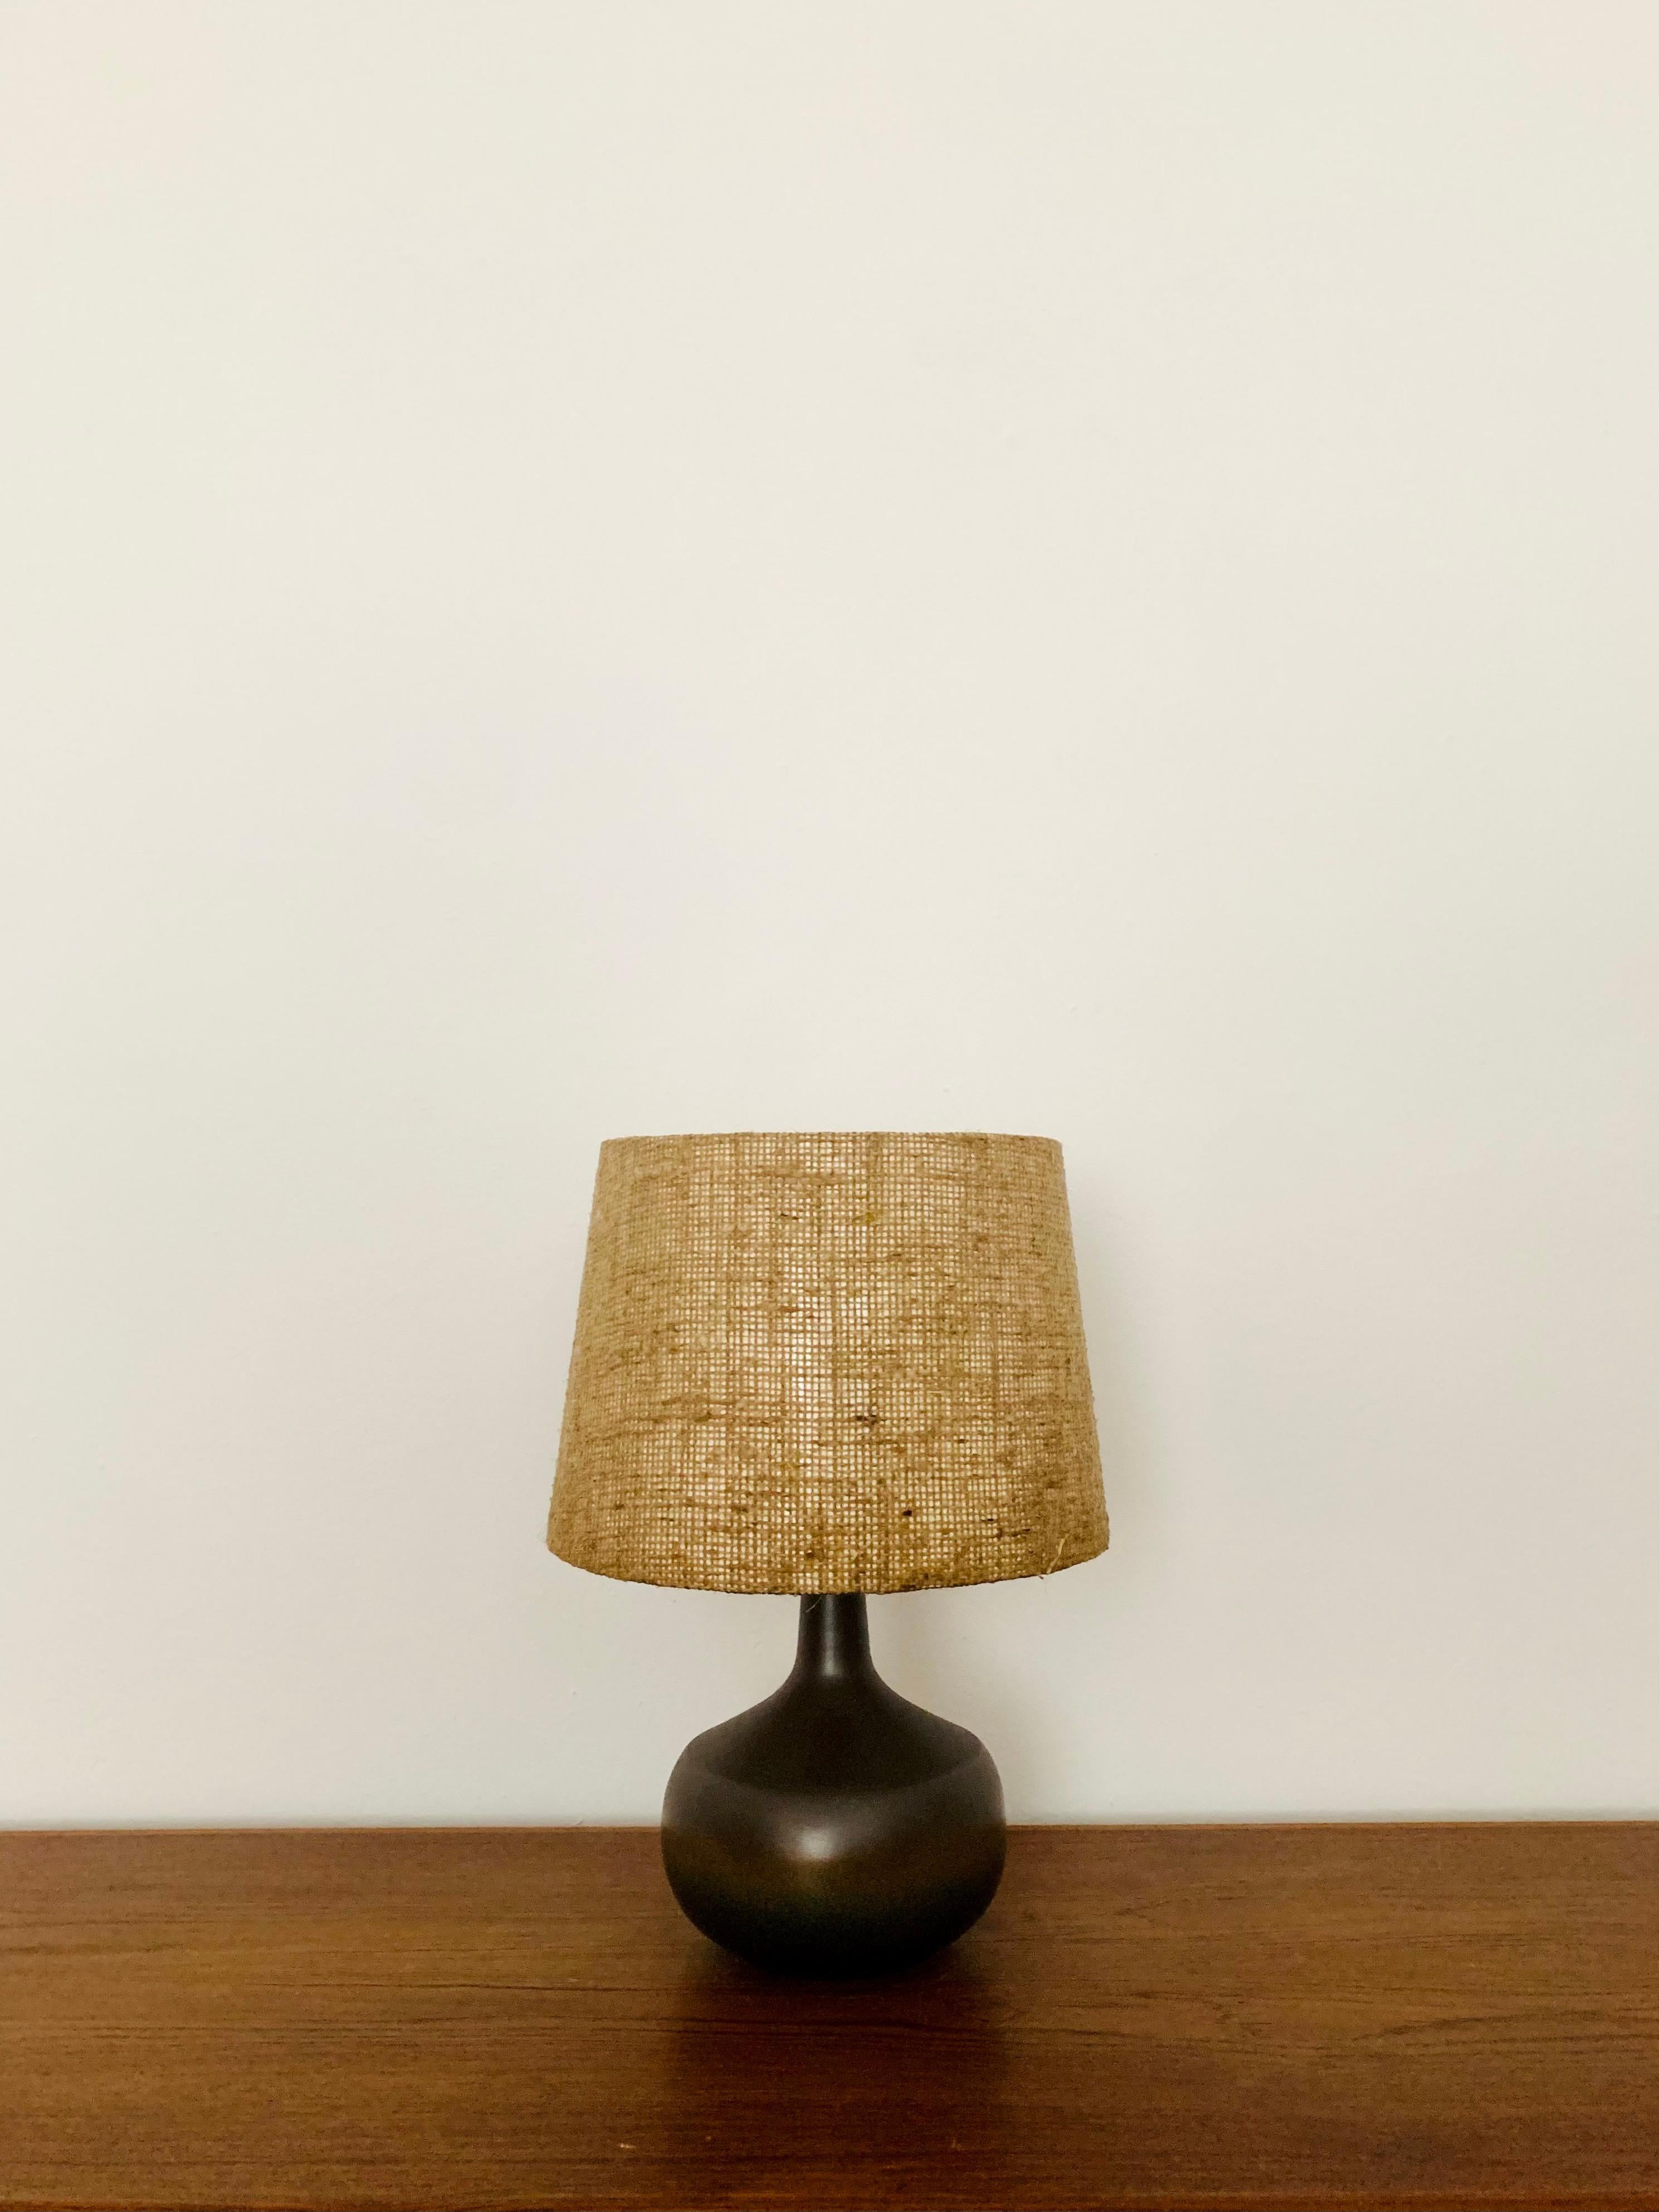 Wunderschöne Tischlampe aus Keramik aus den 1960er Jahren.
Äußerst hochwertige Verarbeitung und sehr schönes Design.
Es entsteht ein sehr gemütliches Licht.

Hersteller: Rosenthal Studio Linie

Bedingung:

Sehr guter Vintage-Zustand mit minimalen